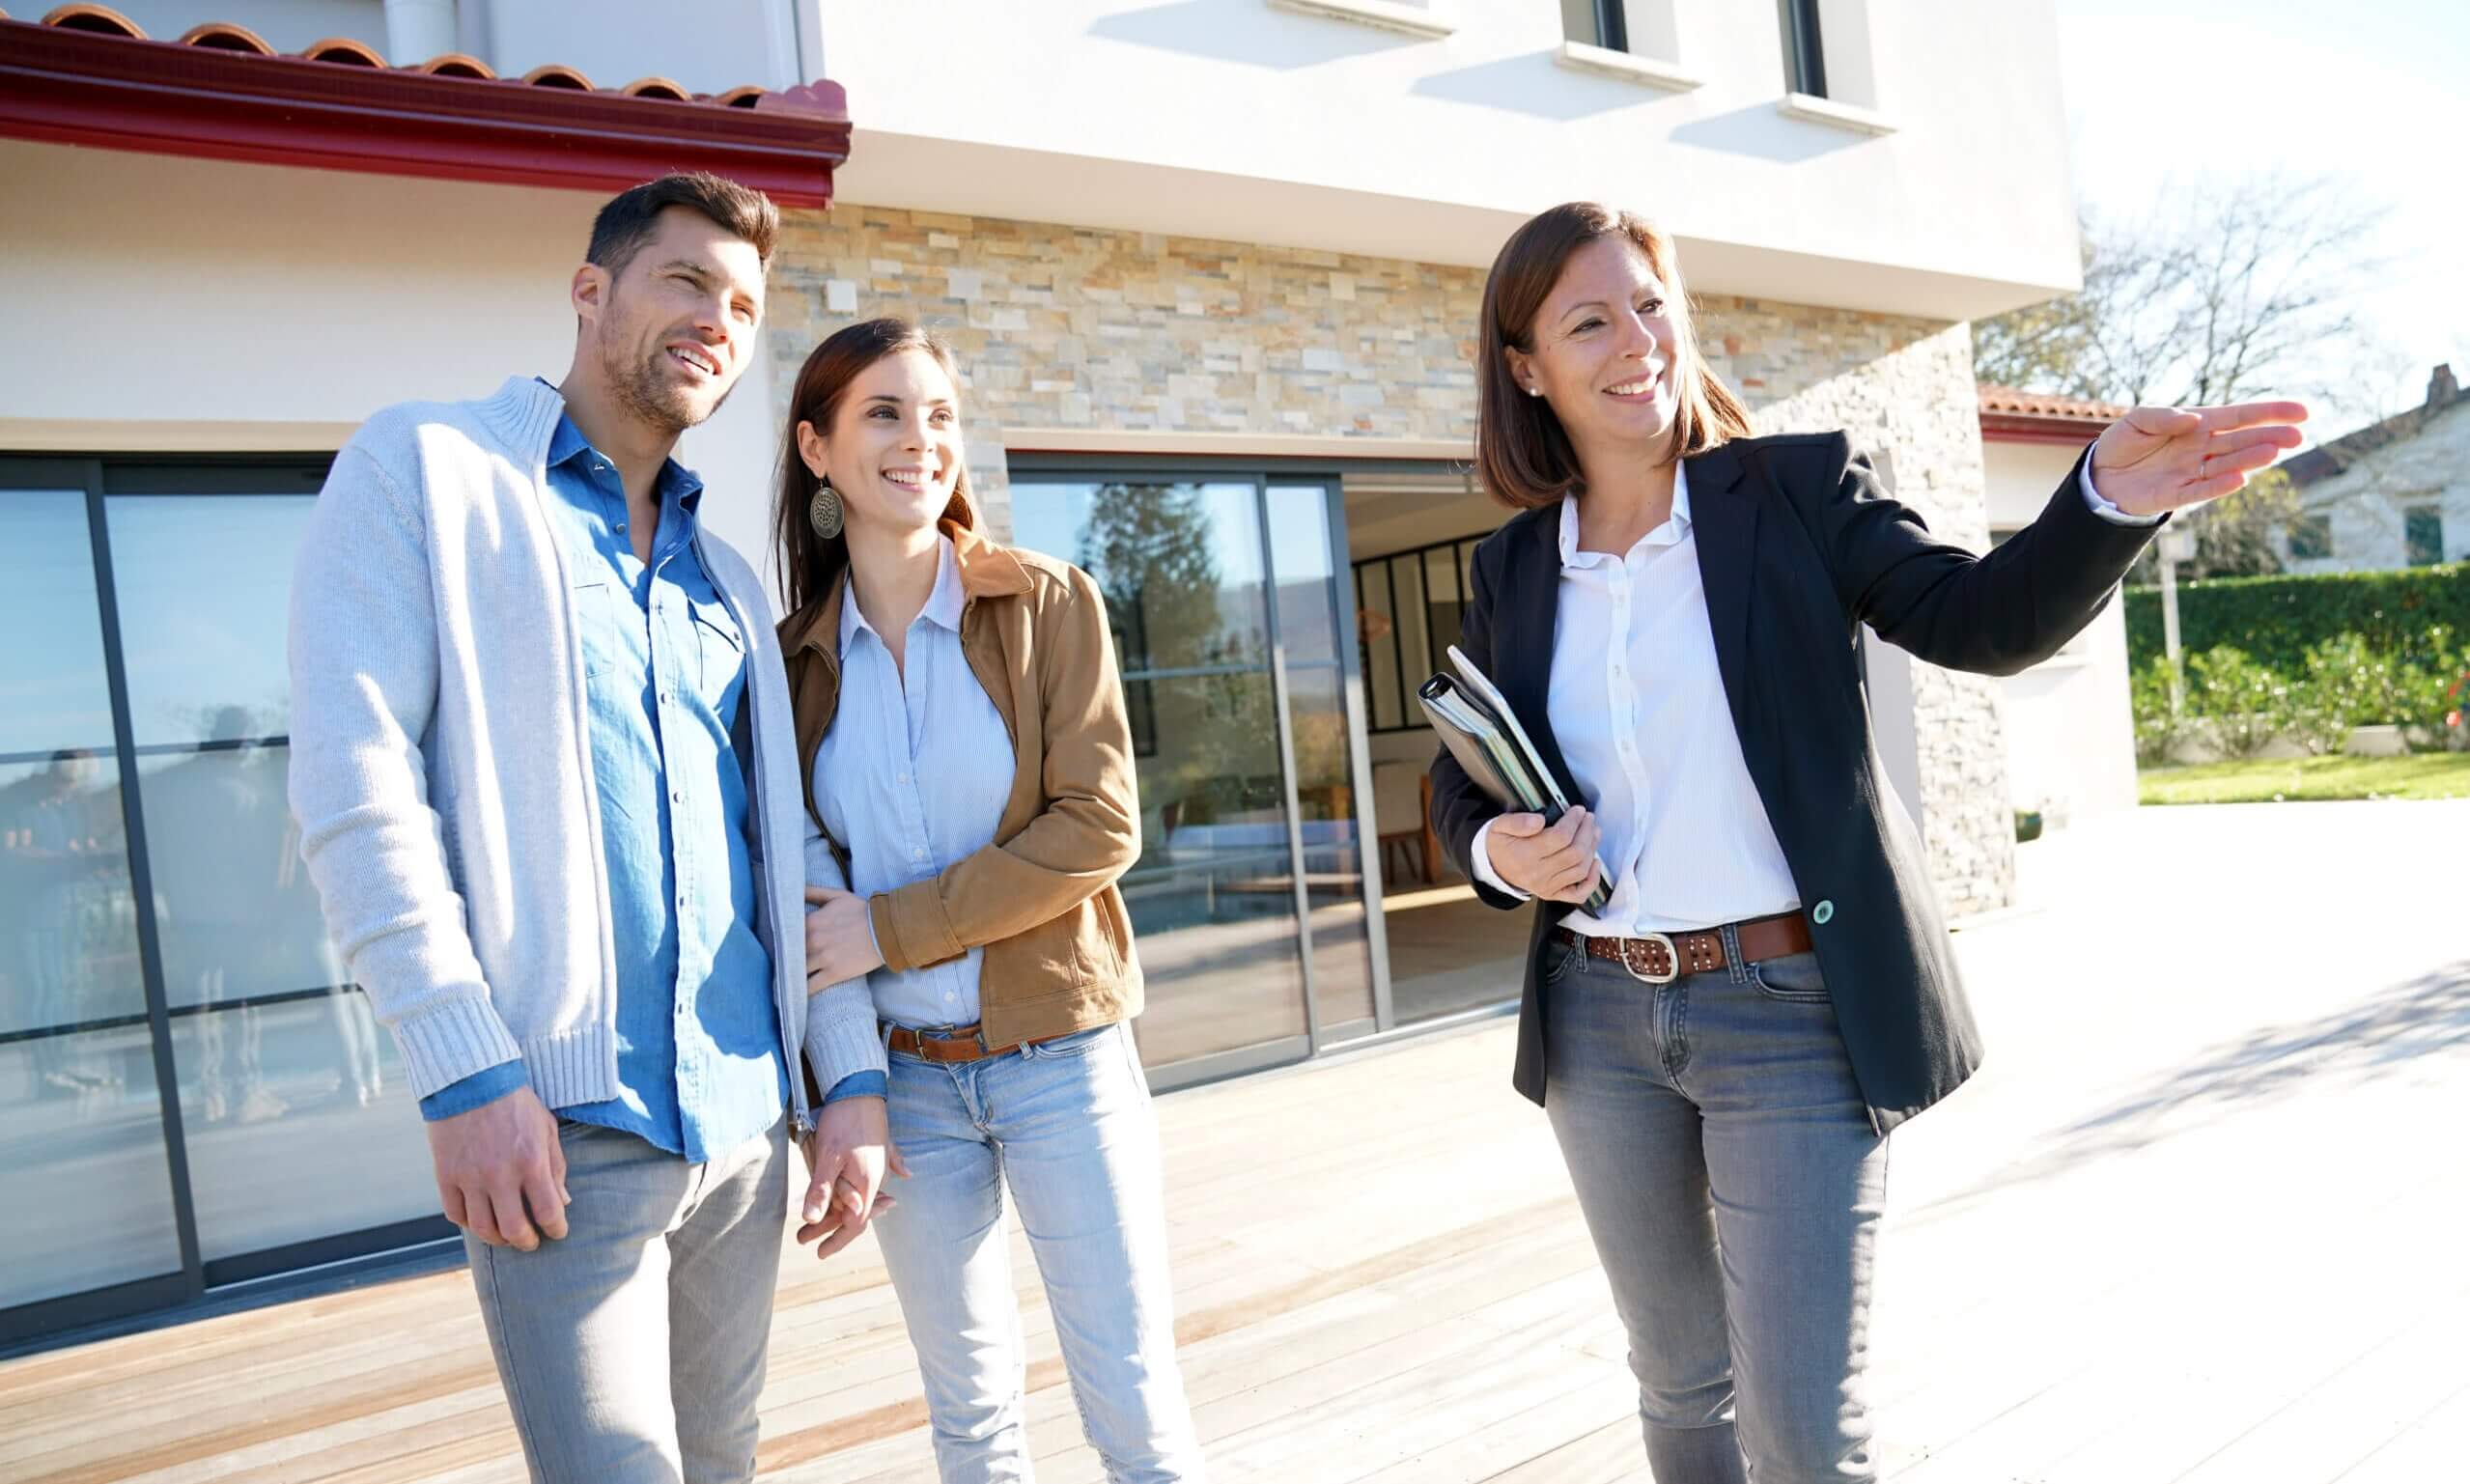 Megbízható partnert keres ingatlanhirdetéseihez? Itt találja a legjobb ár-érték arányt!